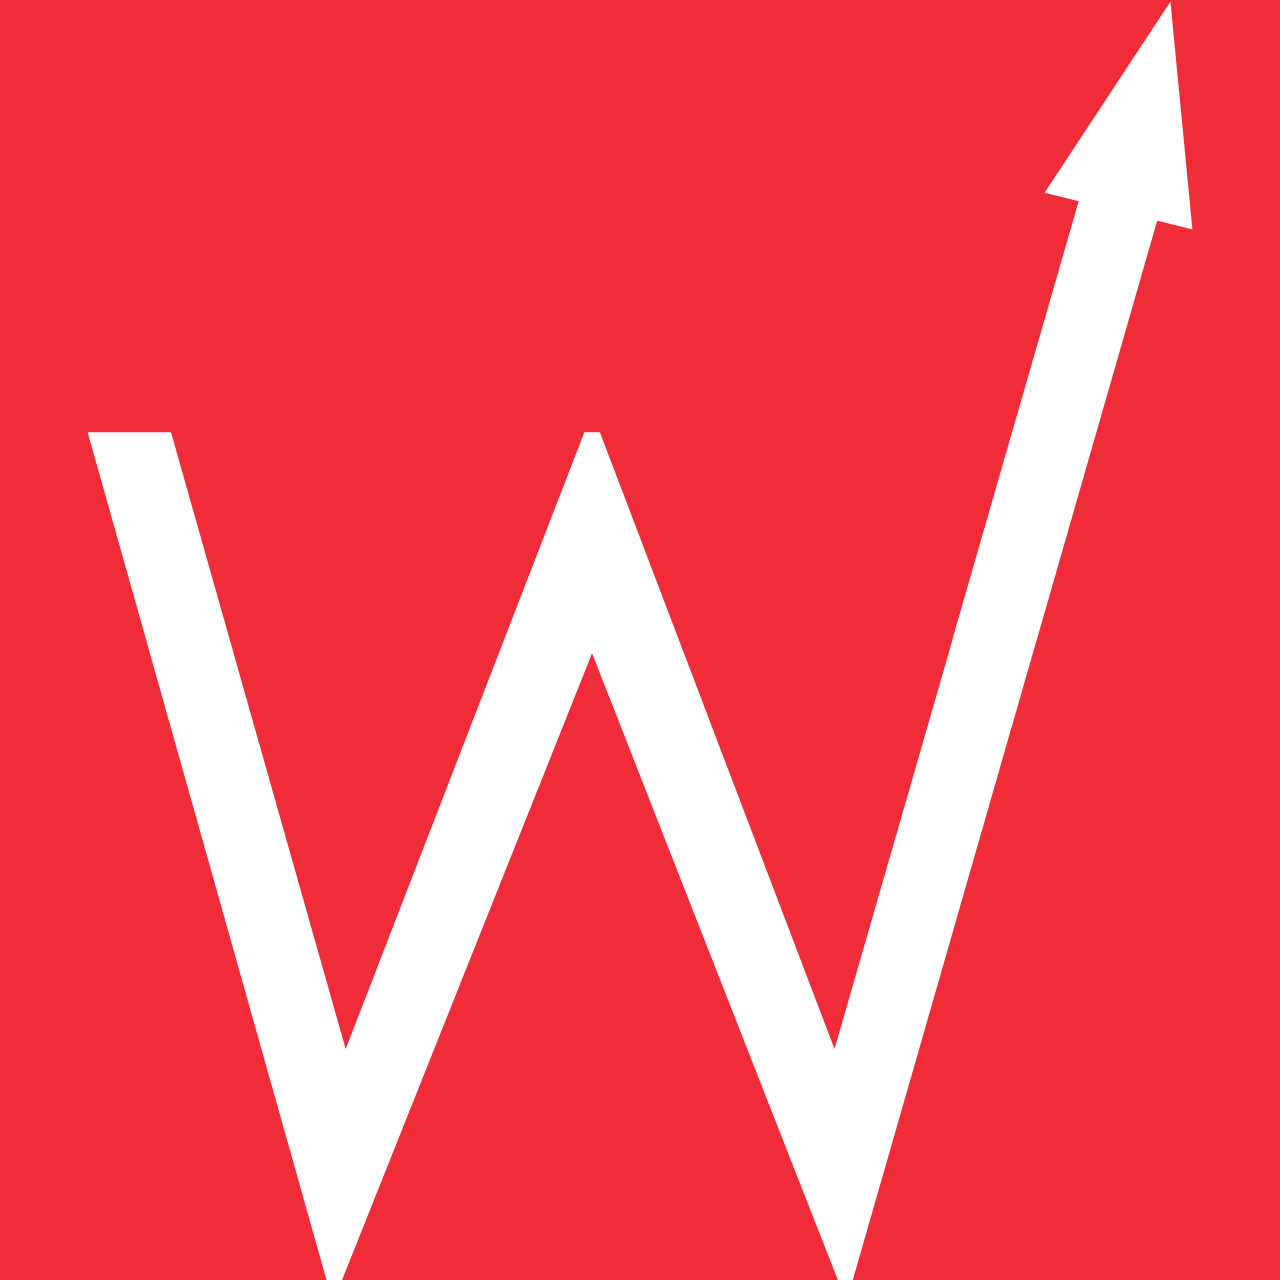 Company logo of Red Wall Marketing